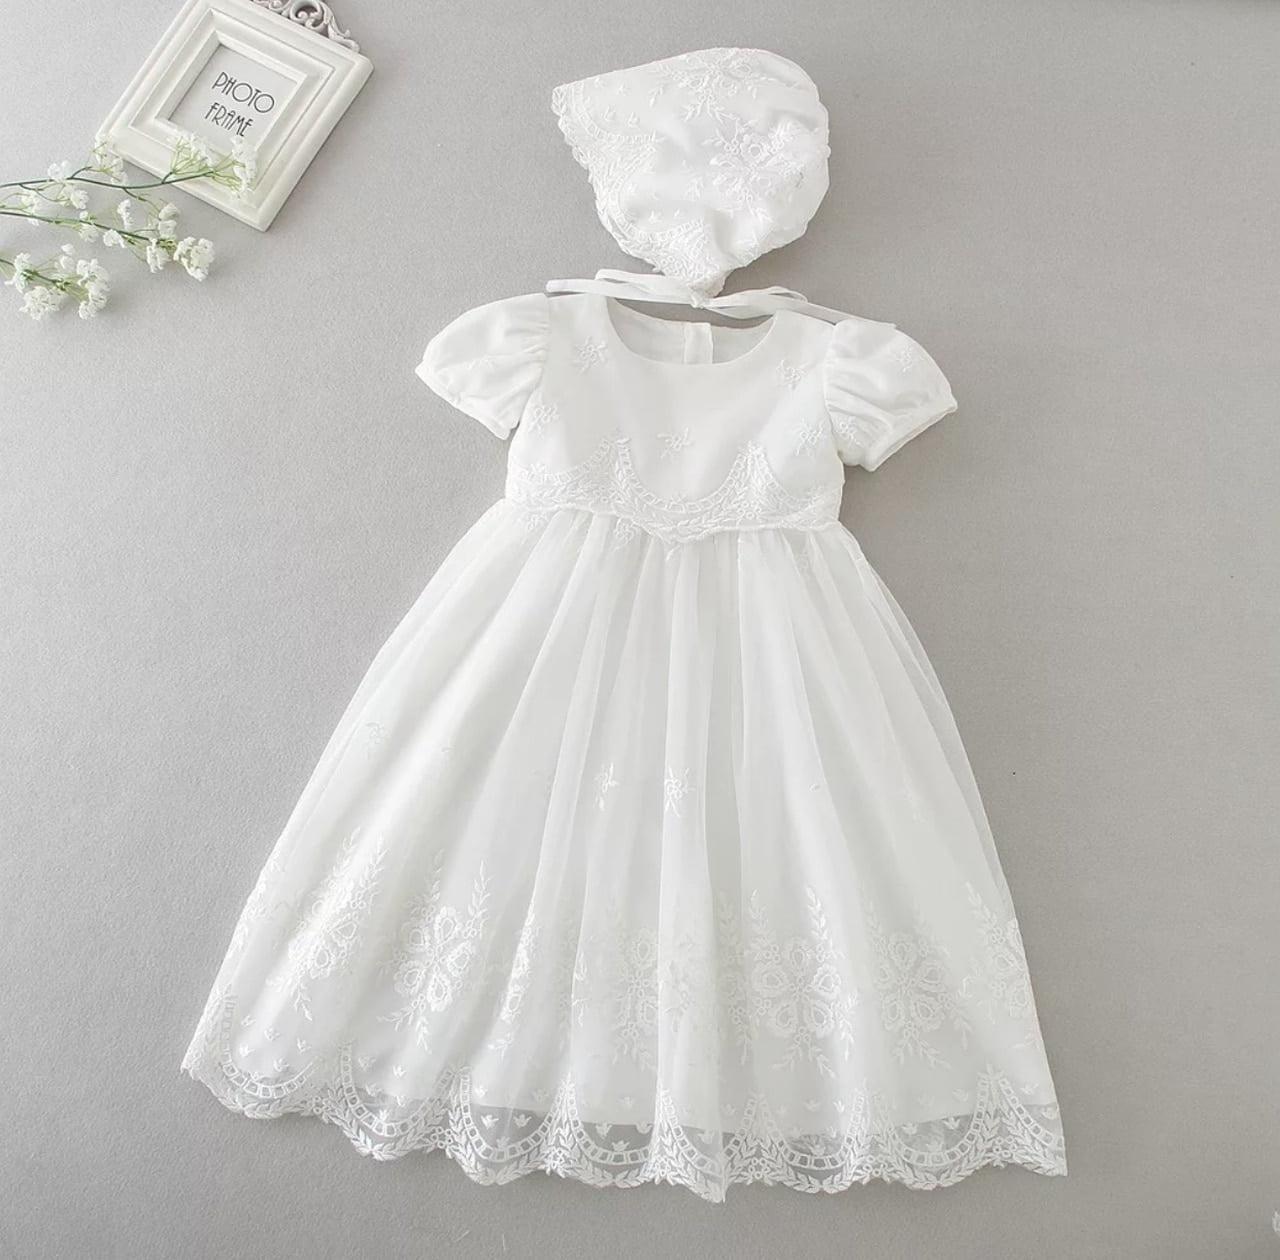 Bonnet 6M 12M 18M 24M White Infant Baby Girl Baptism Christening Gown Dress 